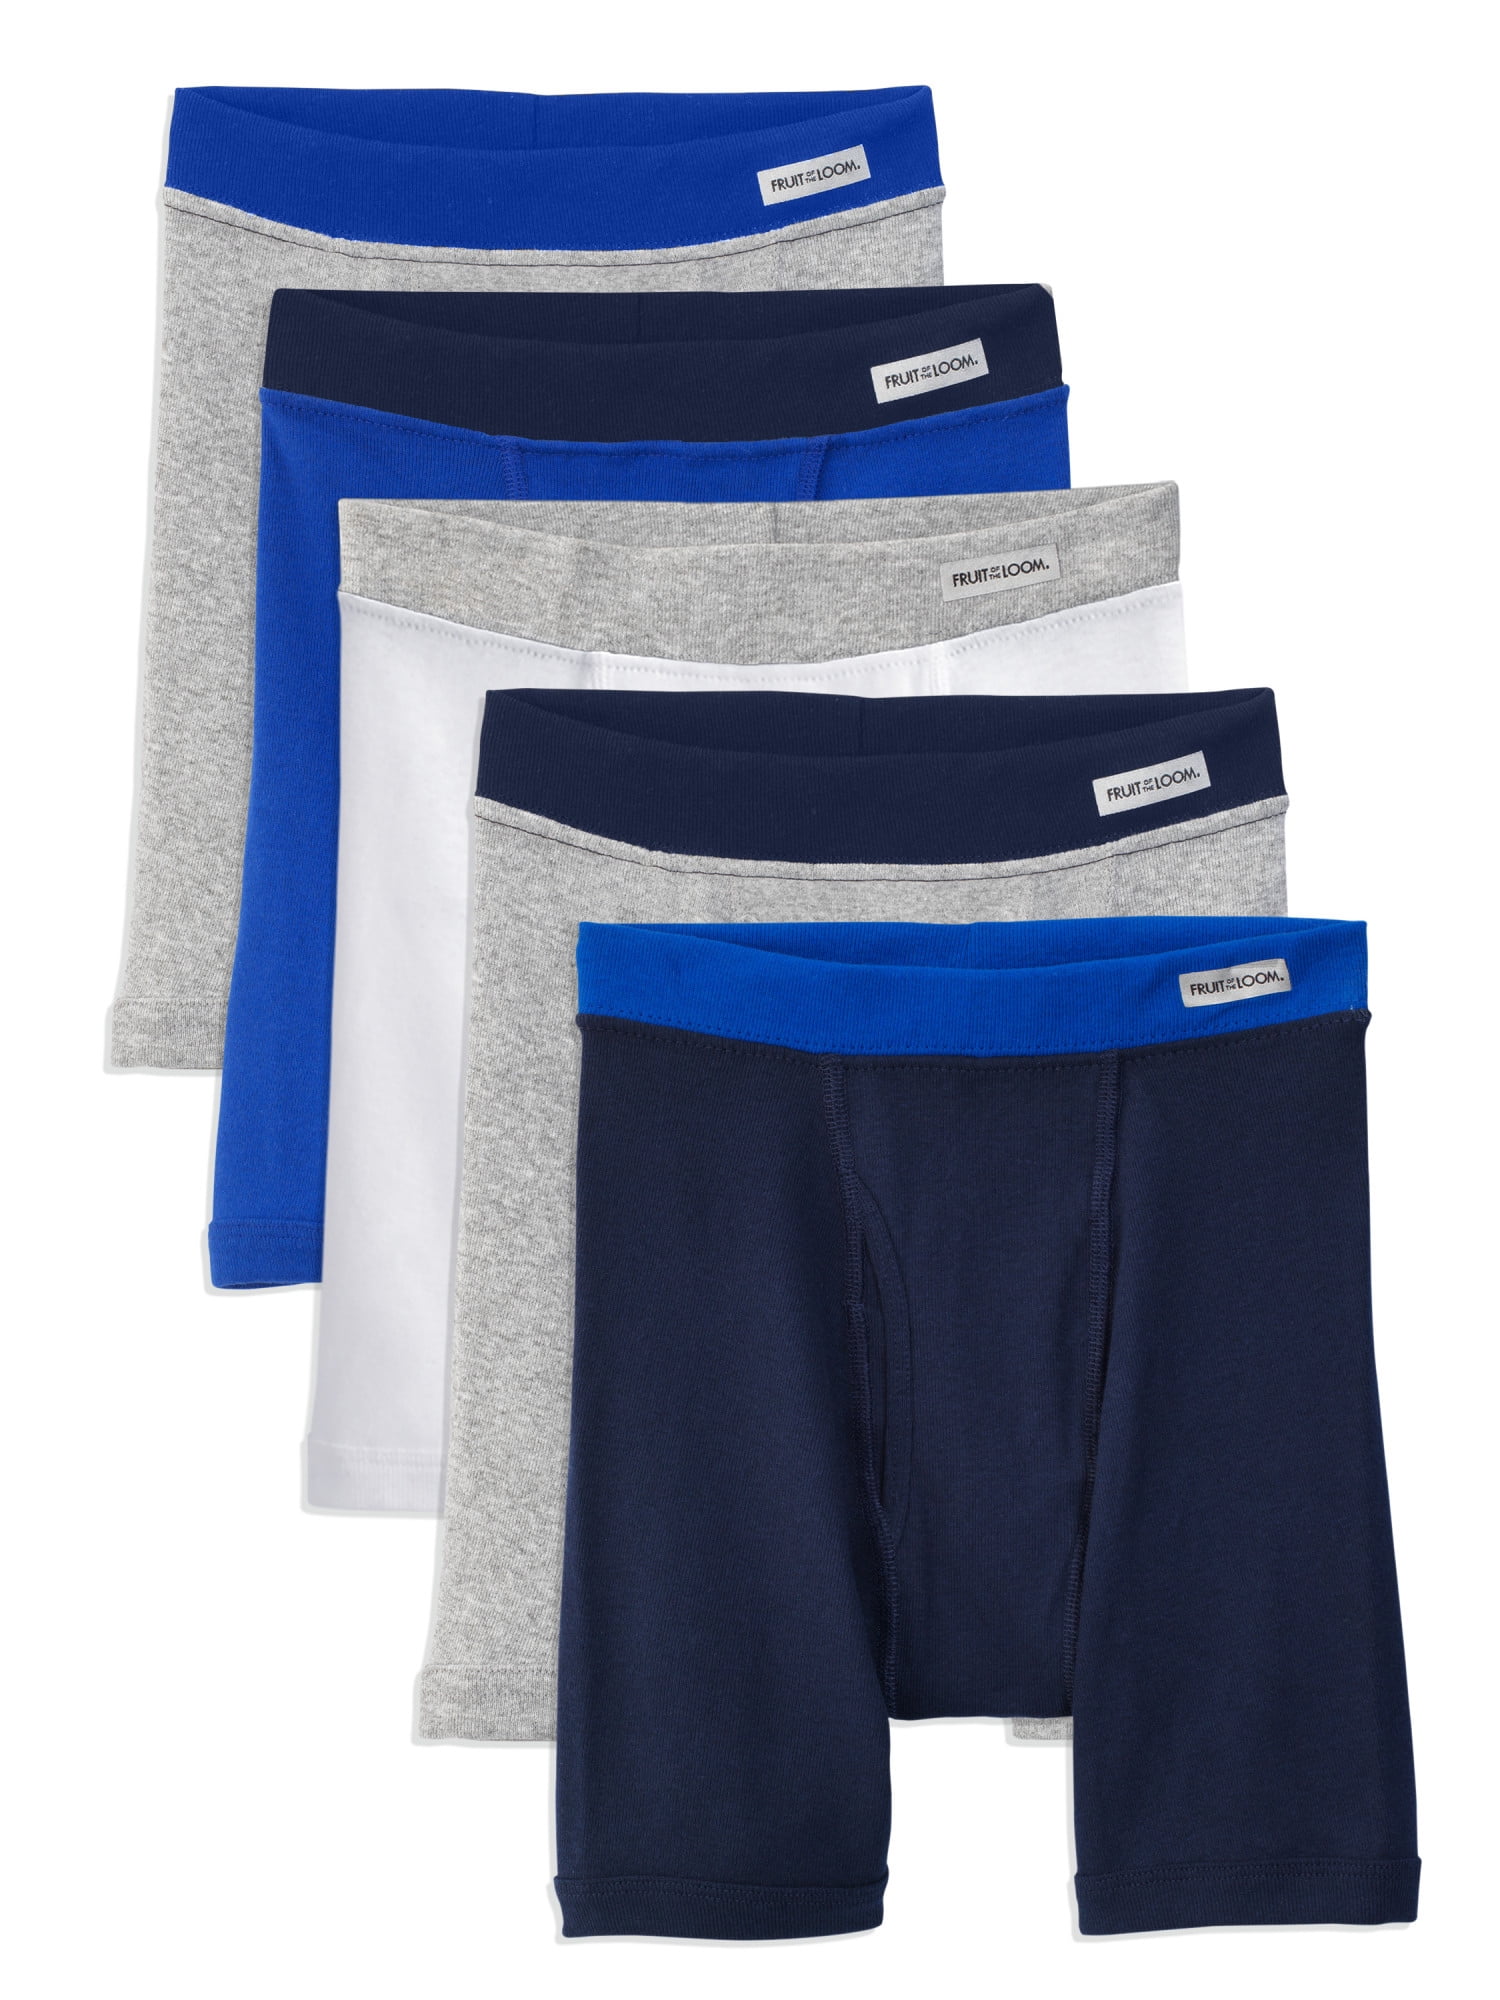 Fruit of the Loom Boys Assorted Boxer Briefs Underwear 5 Pack 6-8 Kleding Jongenskleding Ondergoed Size Small 